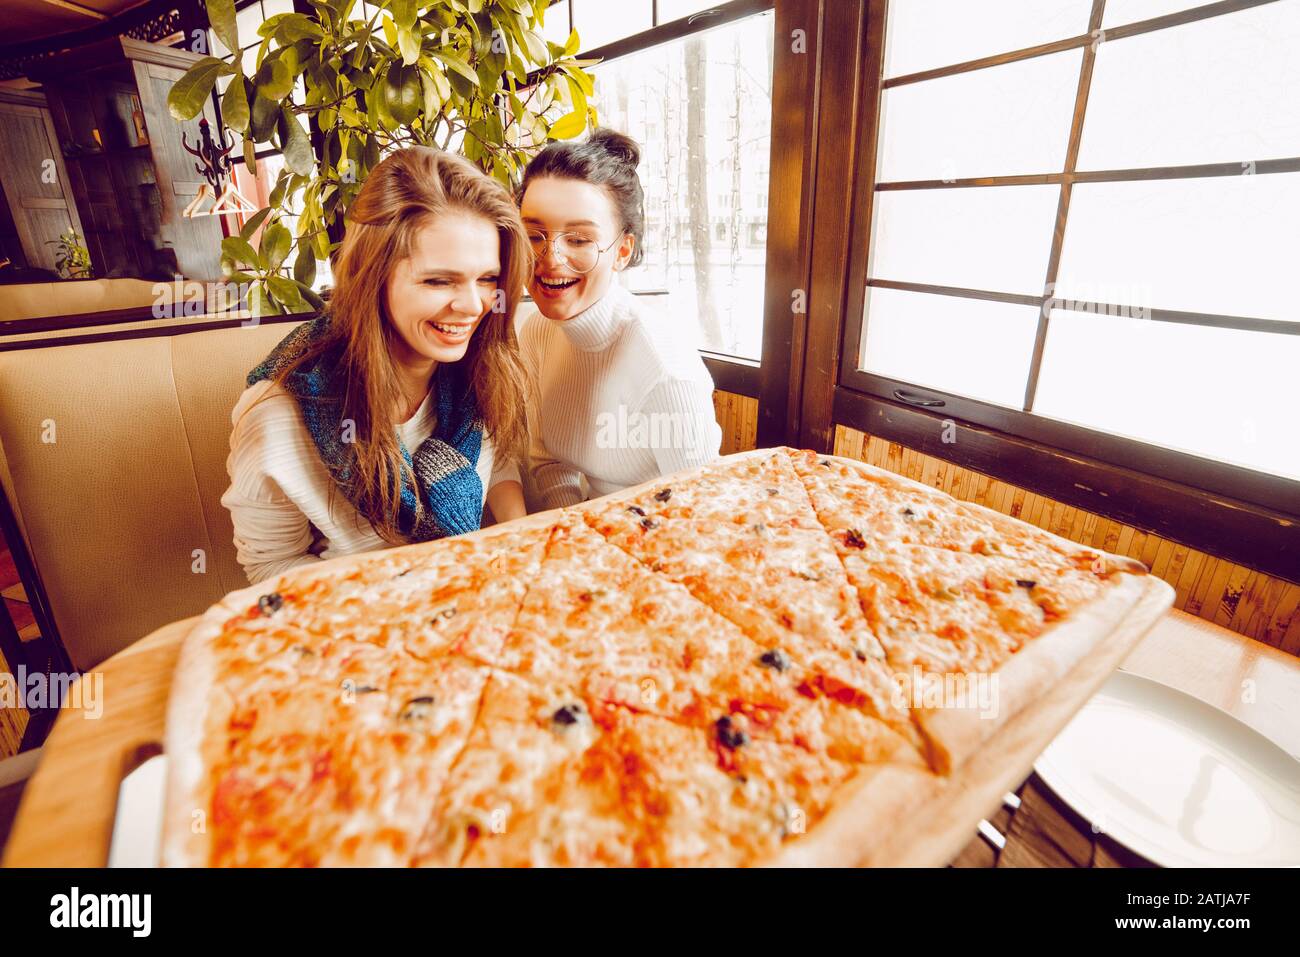 Filles dans une pizzeria avec une énorme pizza en tranches. Grande pizza sur la table. Amies dans un café Banque D'Images